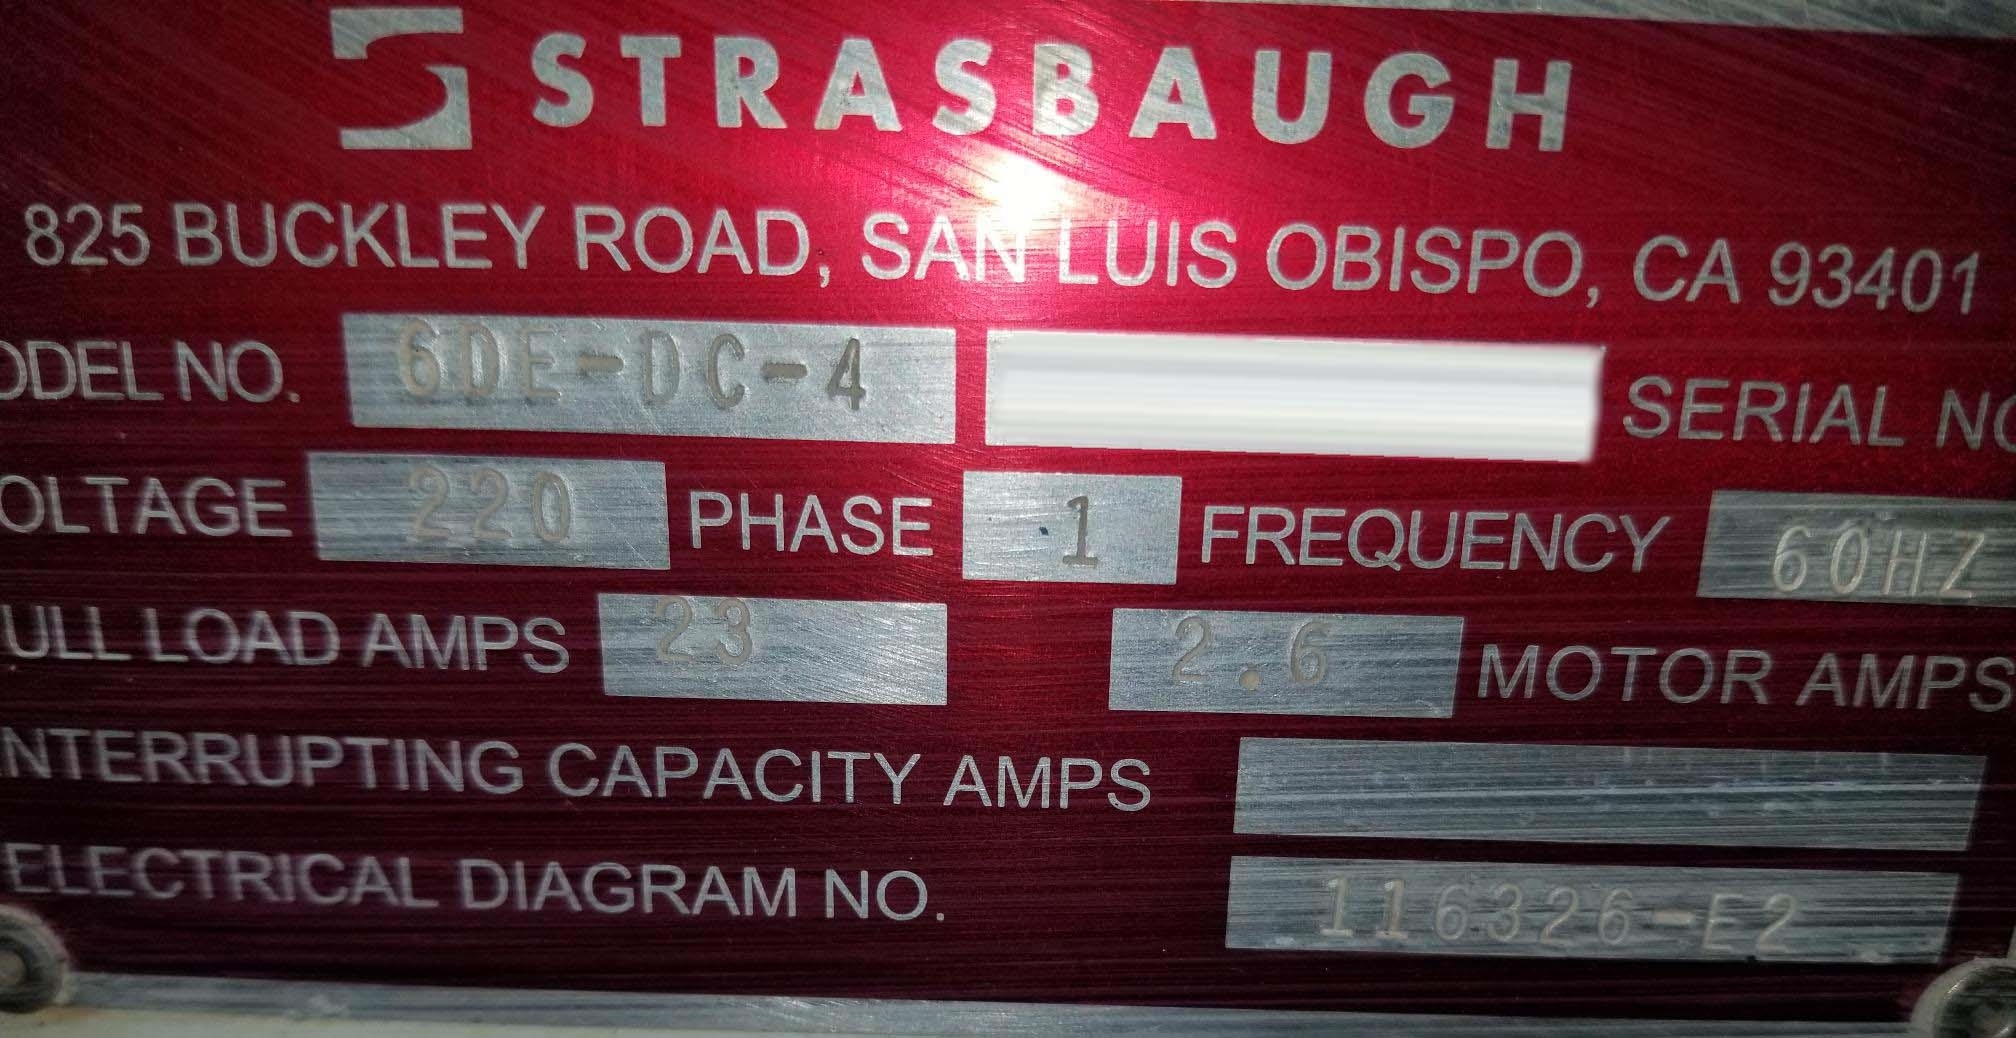 图为 已使用的 STRASBAUGH 6DE-DC-4 待售